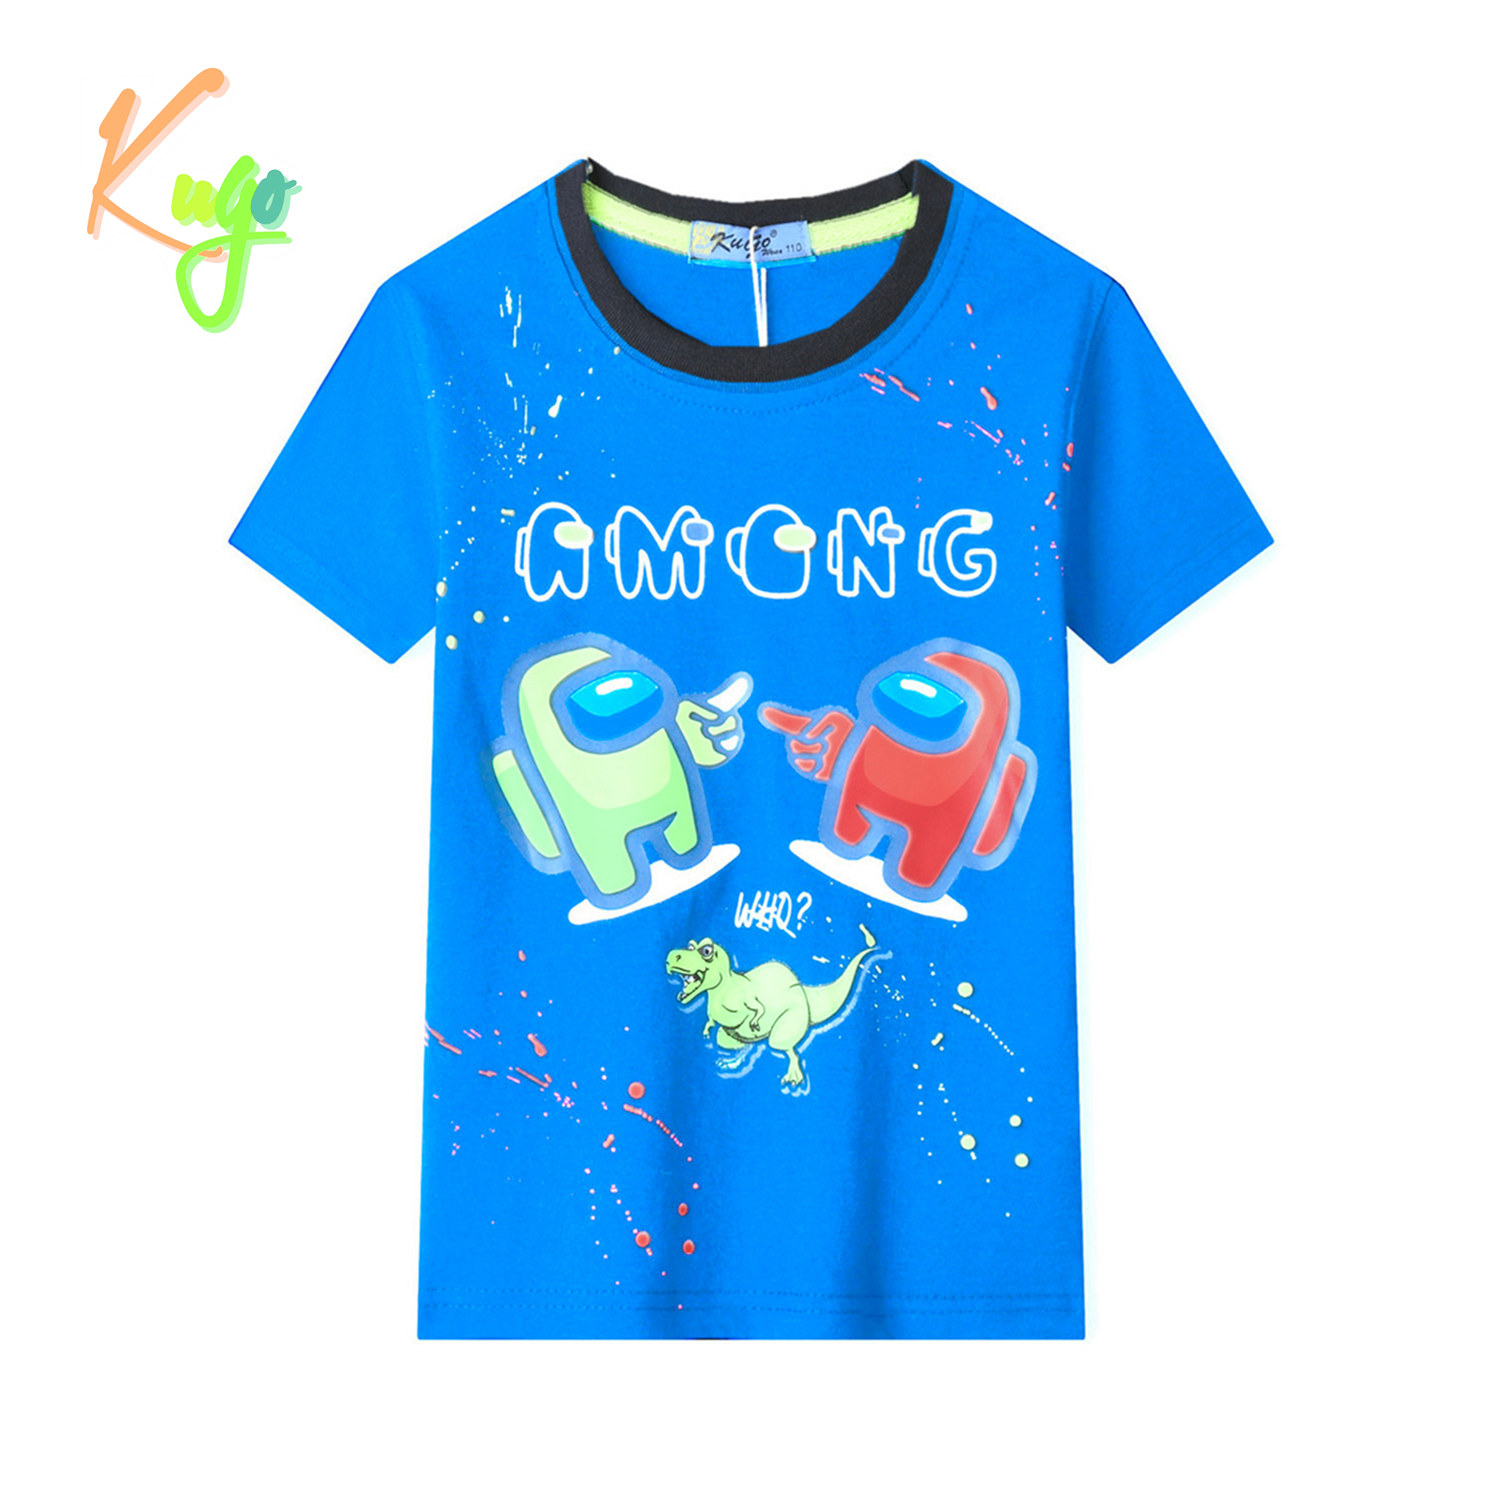 Chlapecké tričko - KUGO TM9202, tyrkysová Barva: Tyrkysová, Velikost: 128